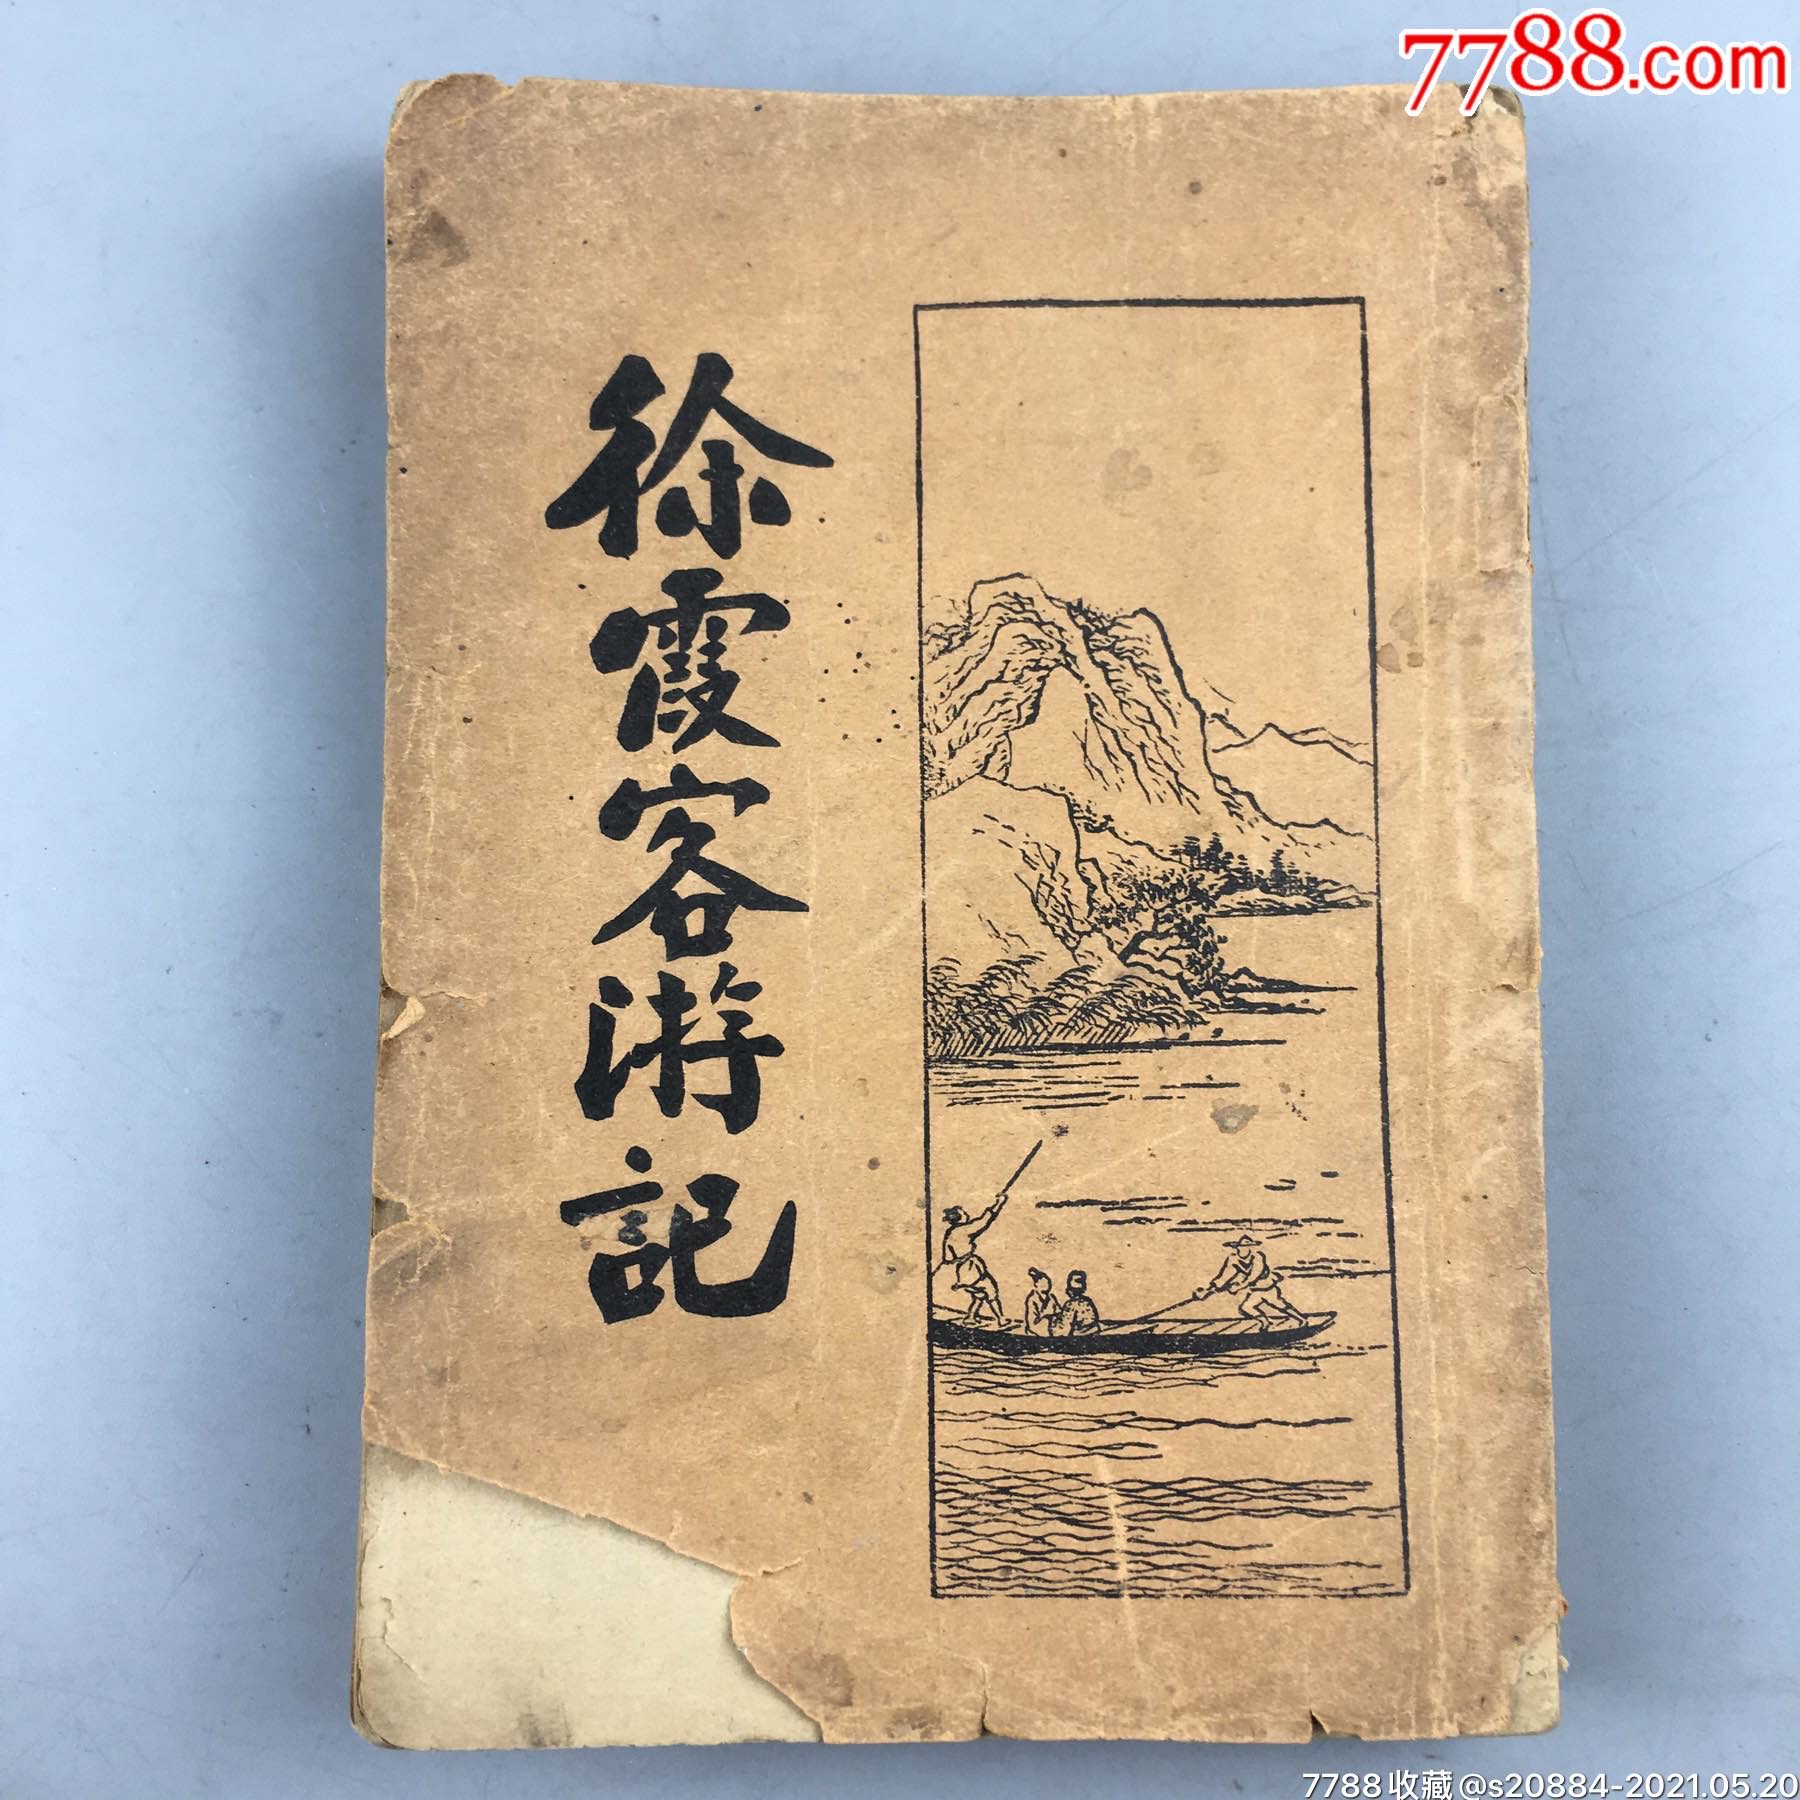 民国时期开明书店出版的徐霞客游记